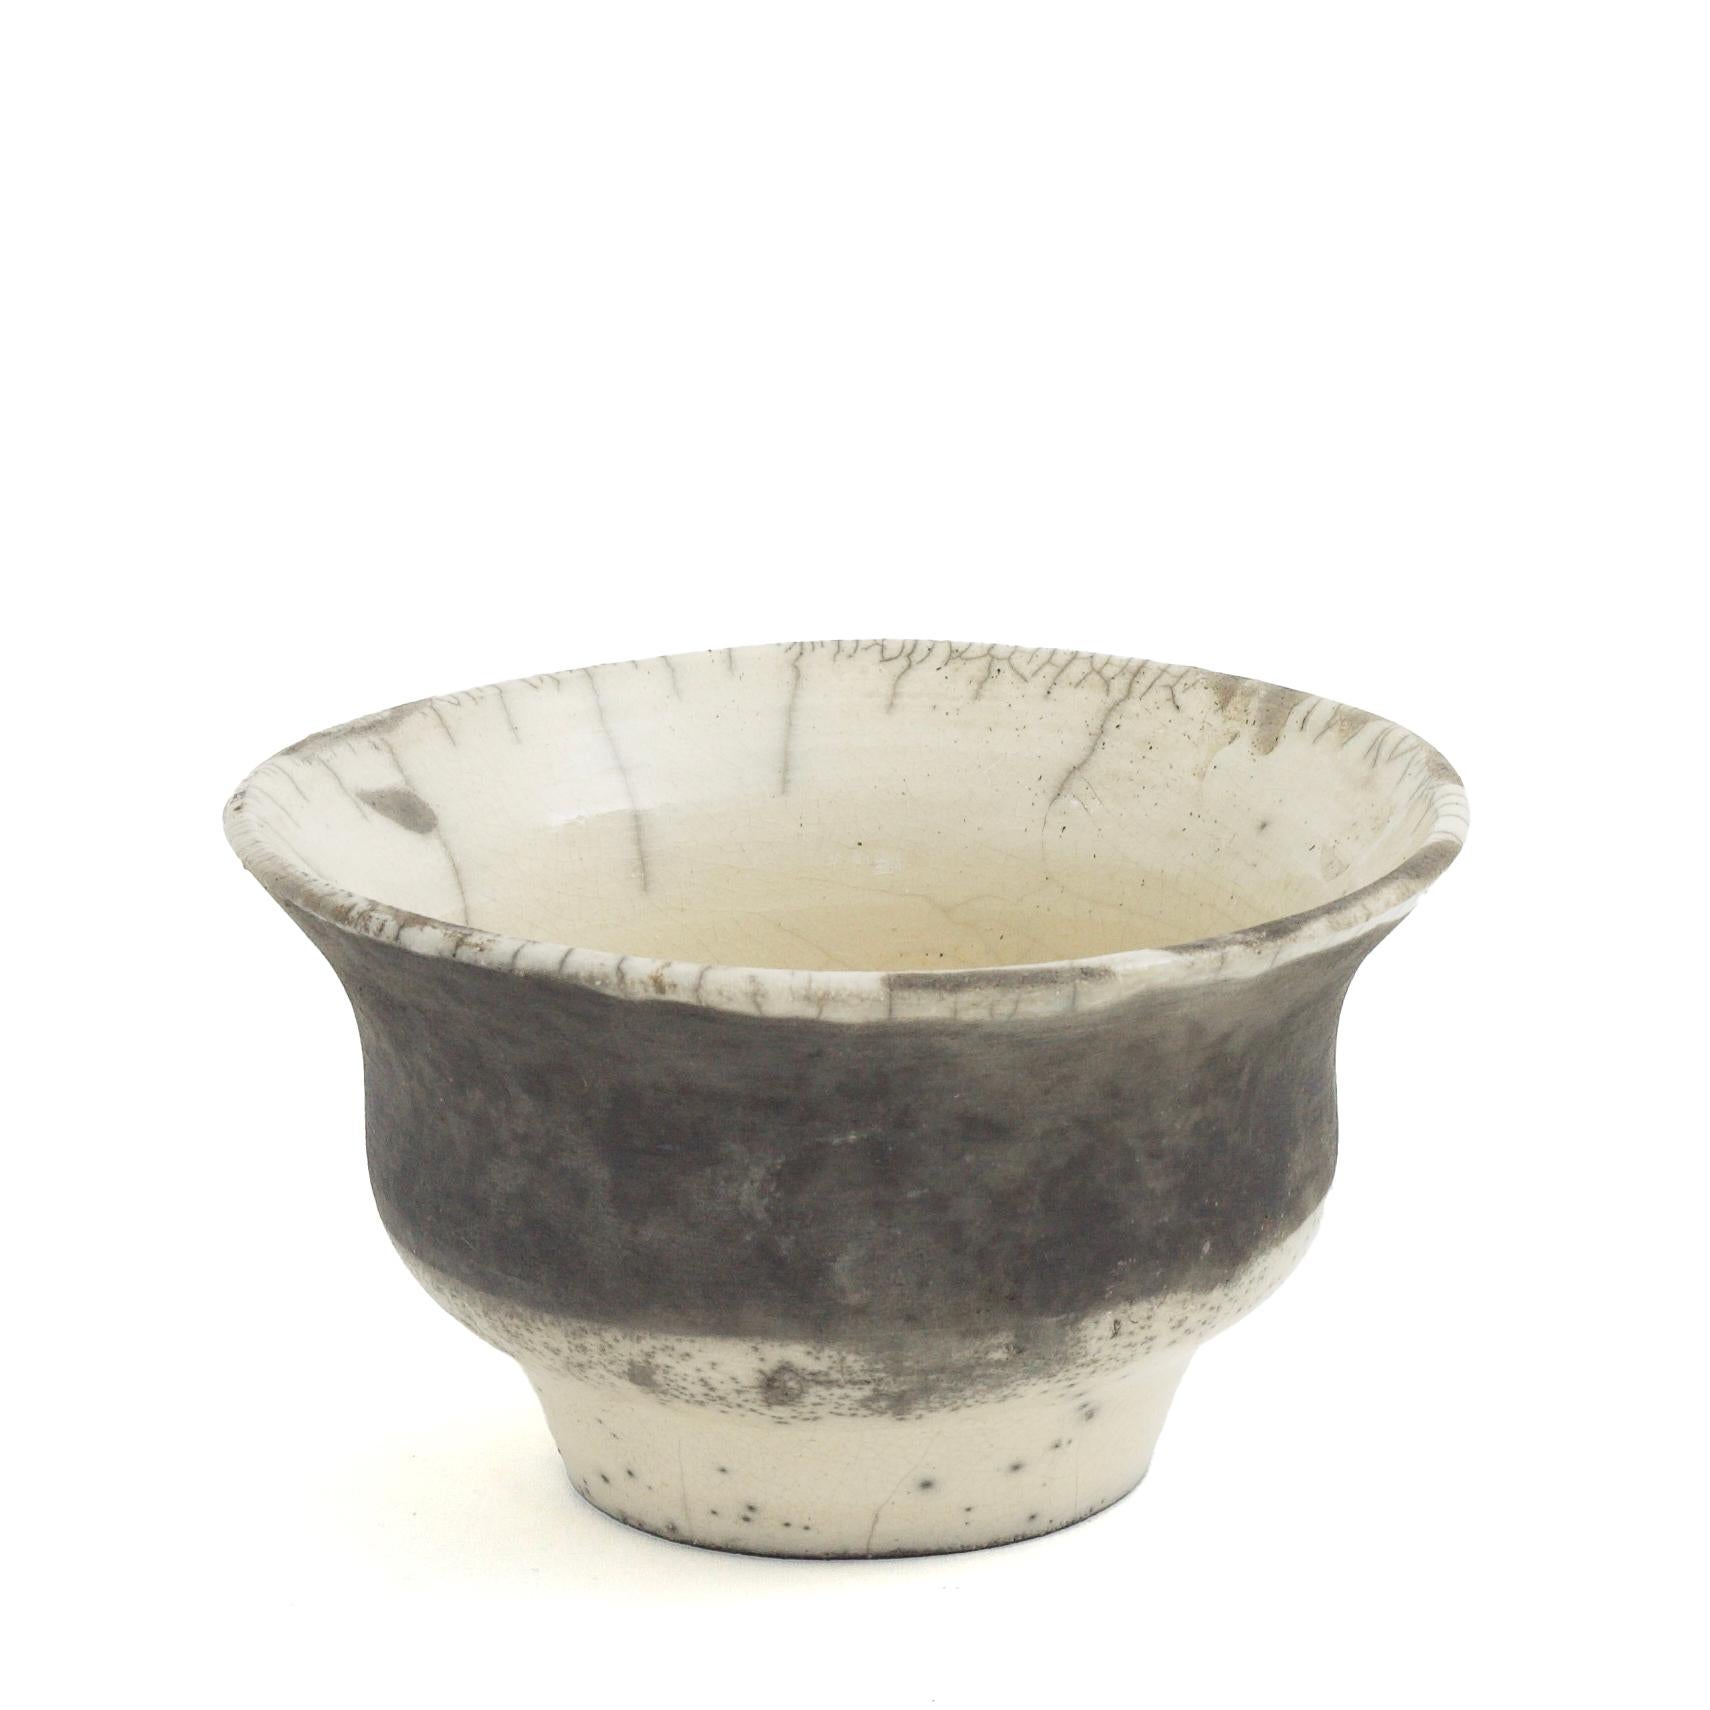 Patto-Vase

Diese einzigartige Vase mit ihren geschwungenen Kurven und dem ausgestellten Profil wurde in Handarbeit aus Keramik nach der alten japanischen Raku-Töpfertechnik hergestellt, was zu einem unverwechselbaren Craquelé führt, dessen